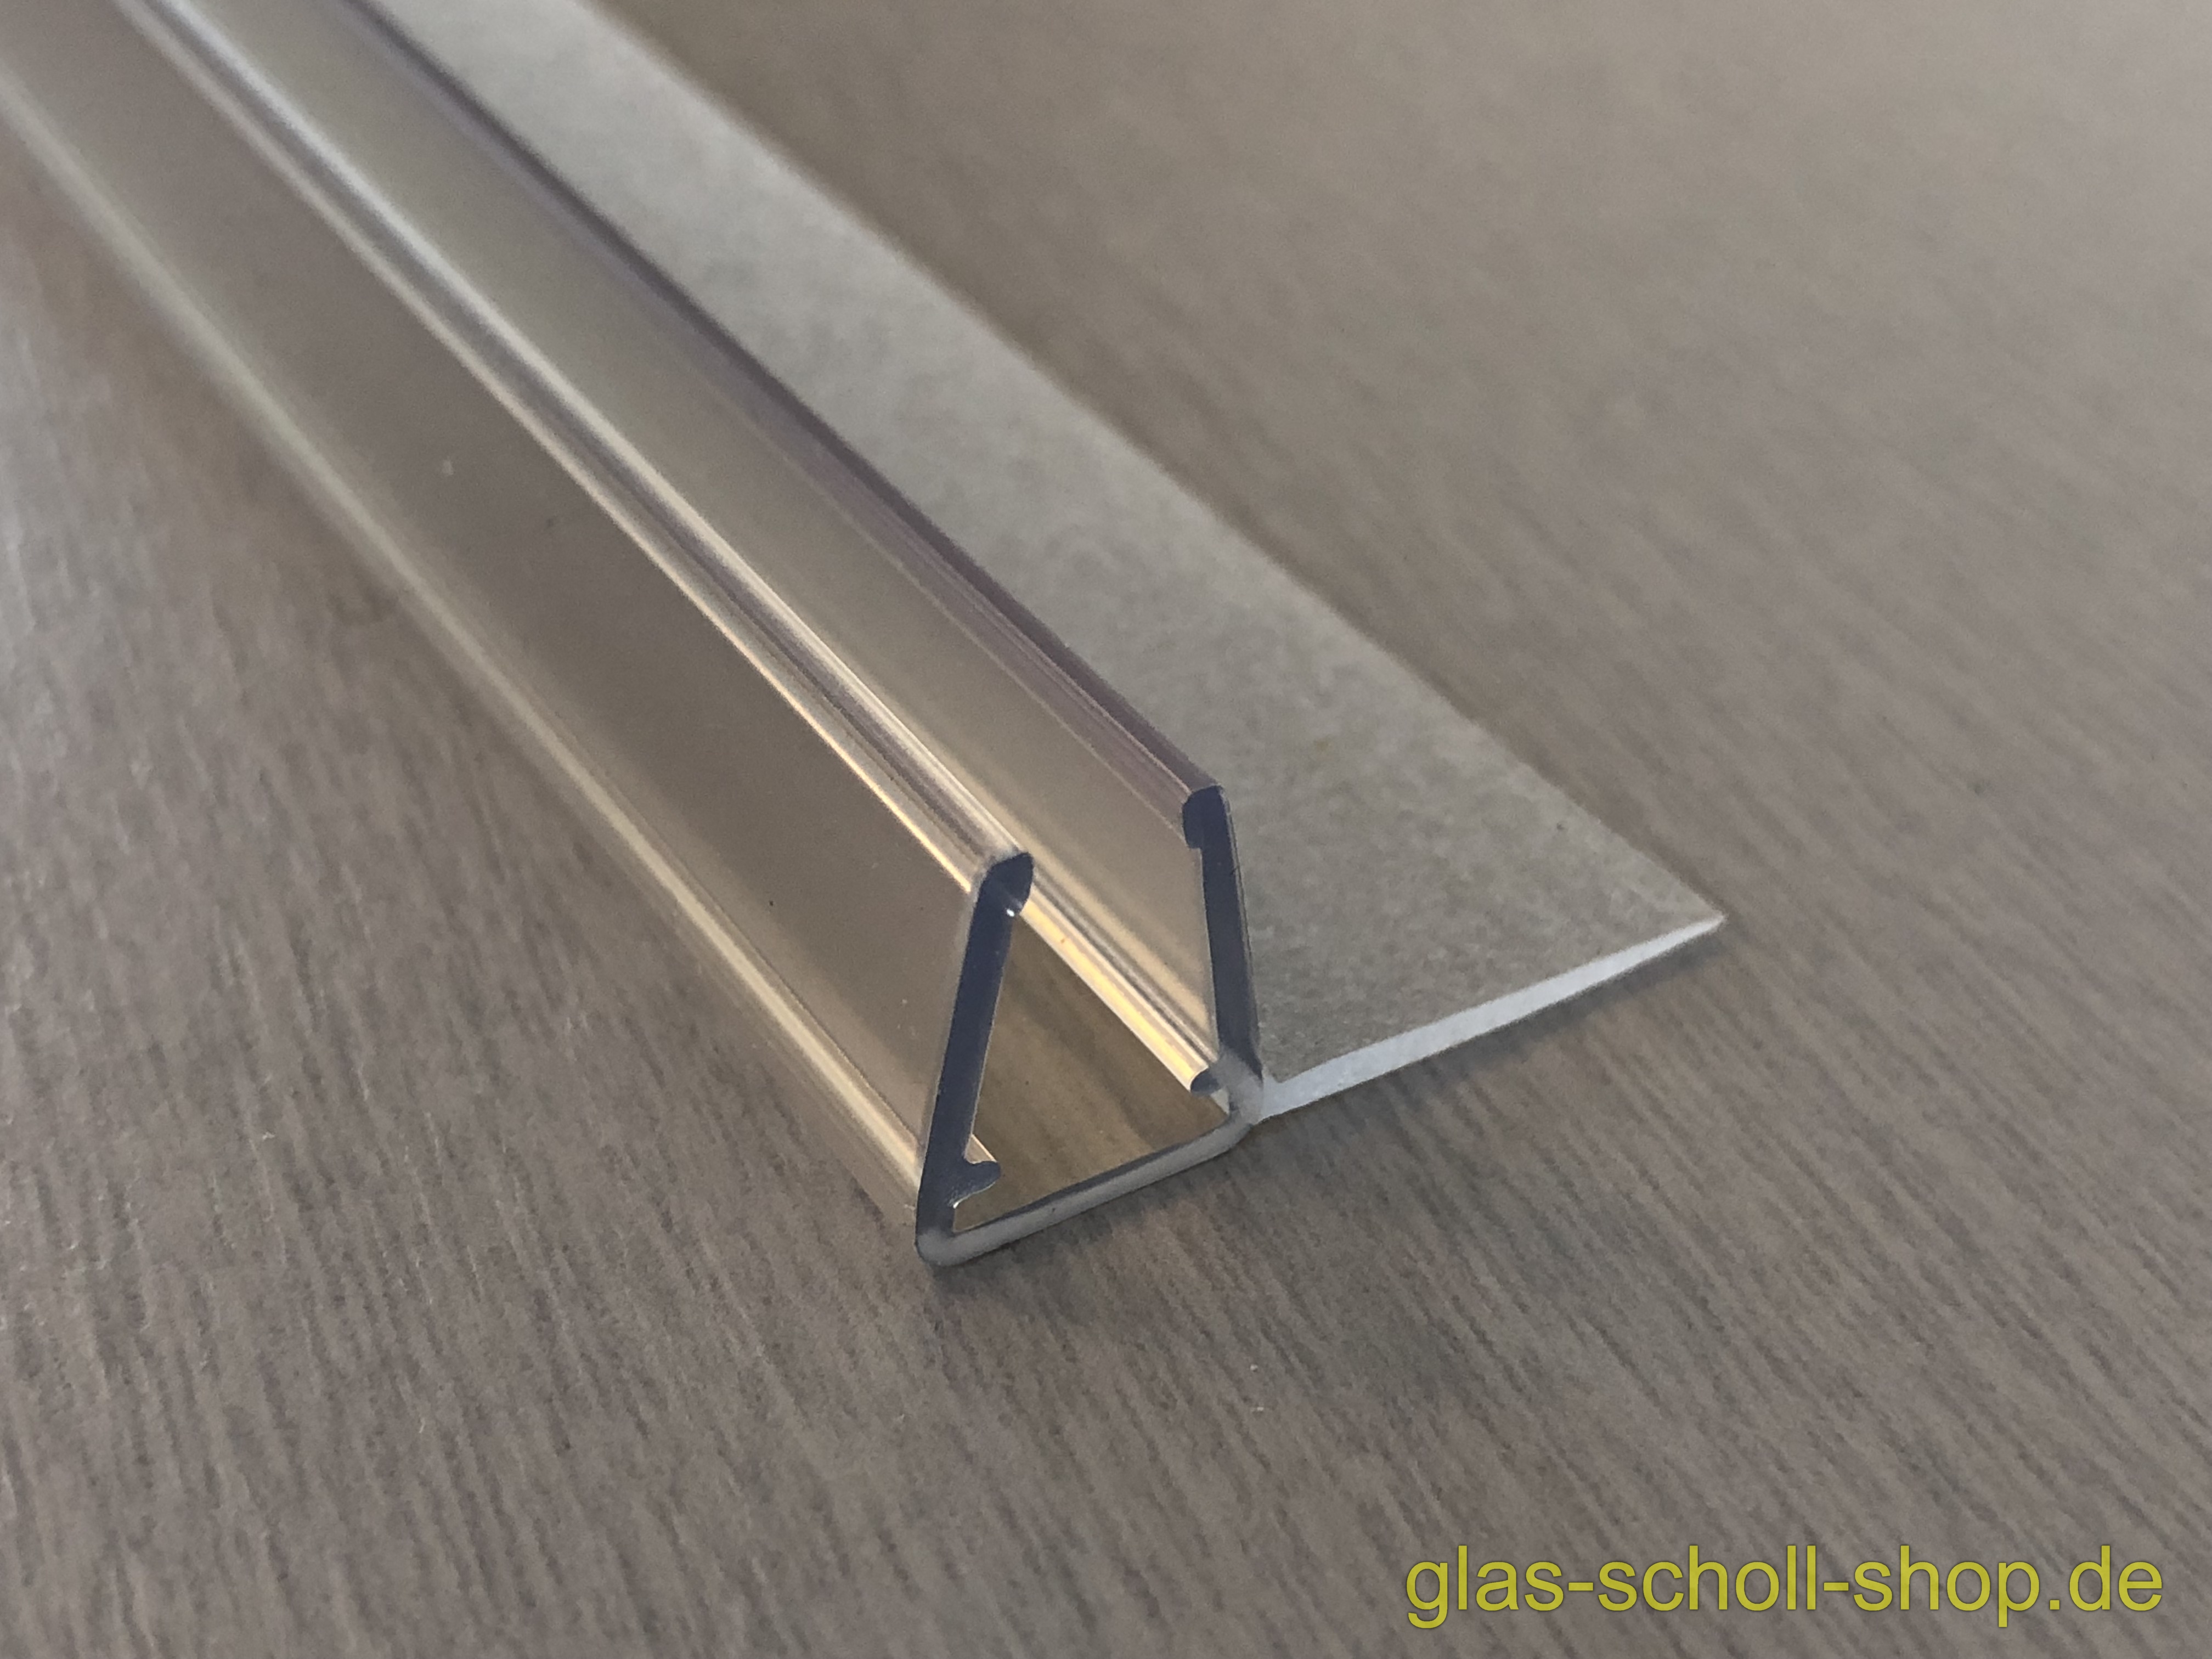 Glas Scholl Webshop, Dichtprofil für 15mm versetzte Schiebetüren mit Lippe  (2010mm) für 6-8mm Glas